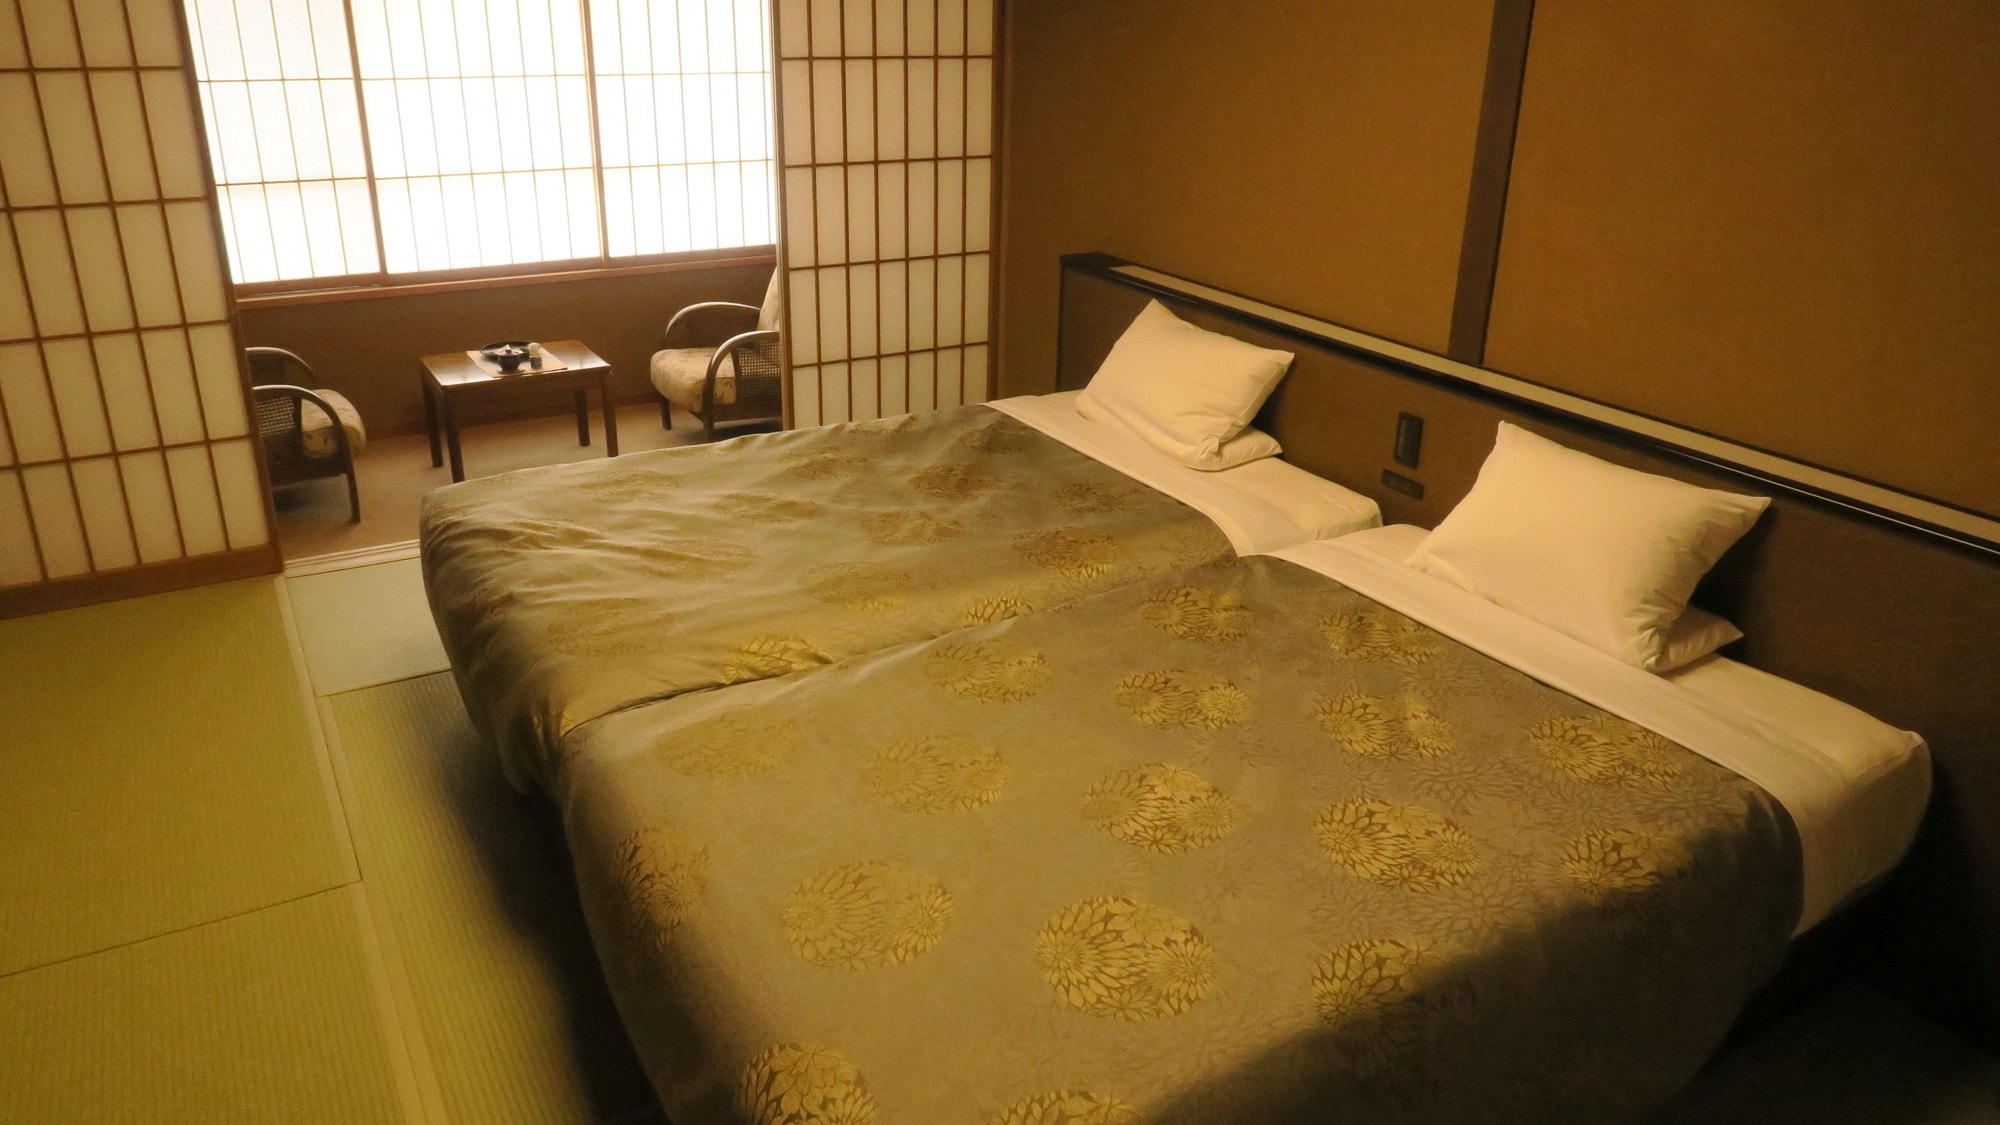  [Gedung Barat] Tipe tempat tidur standar gaya Jepang